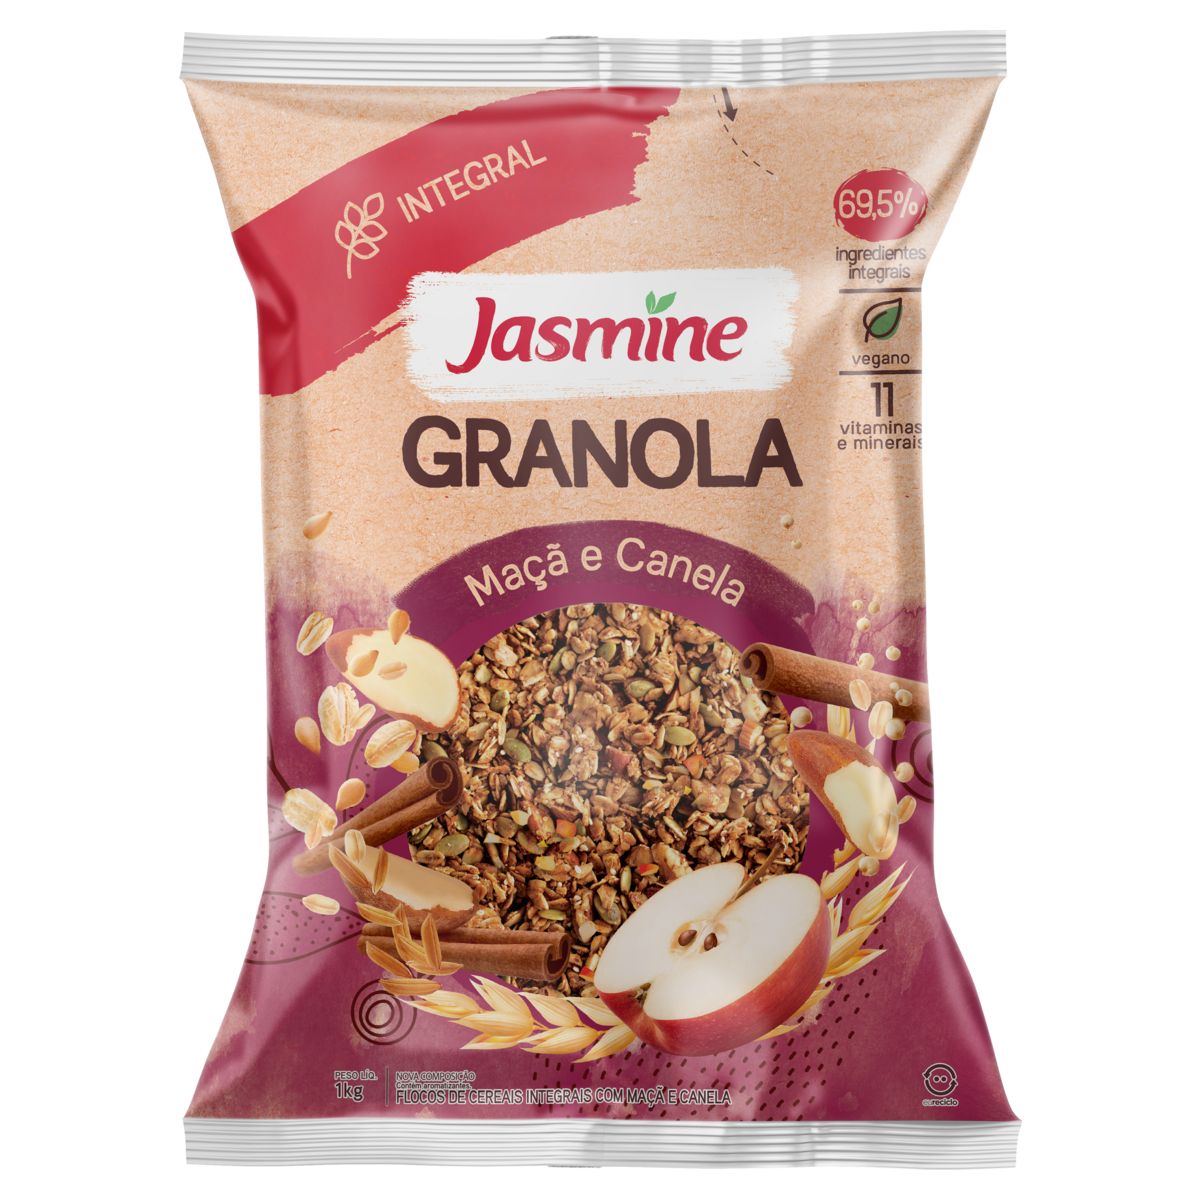 Granola Jasmine Maçã e Canela 69,5% Integral Pacote 1kg